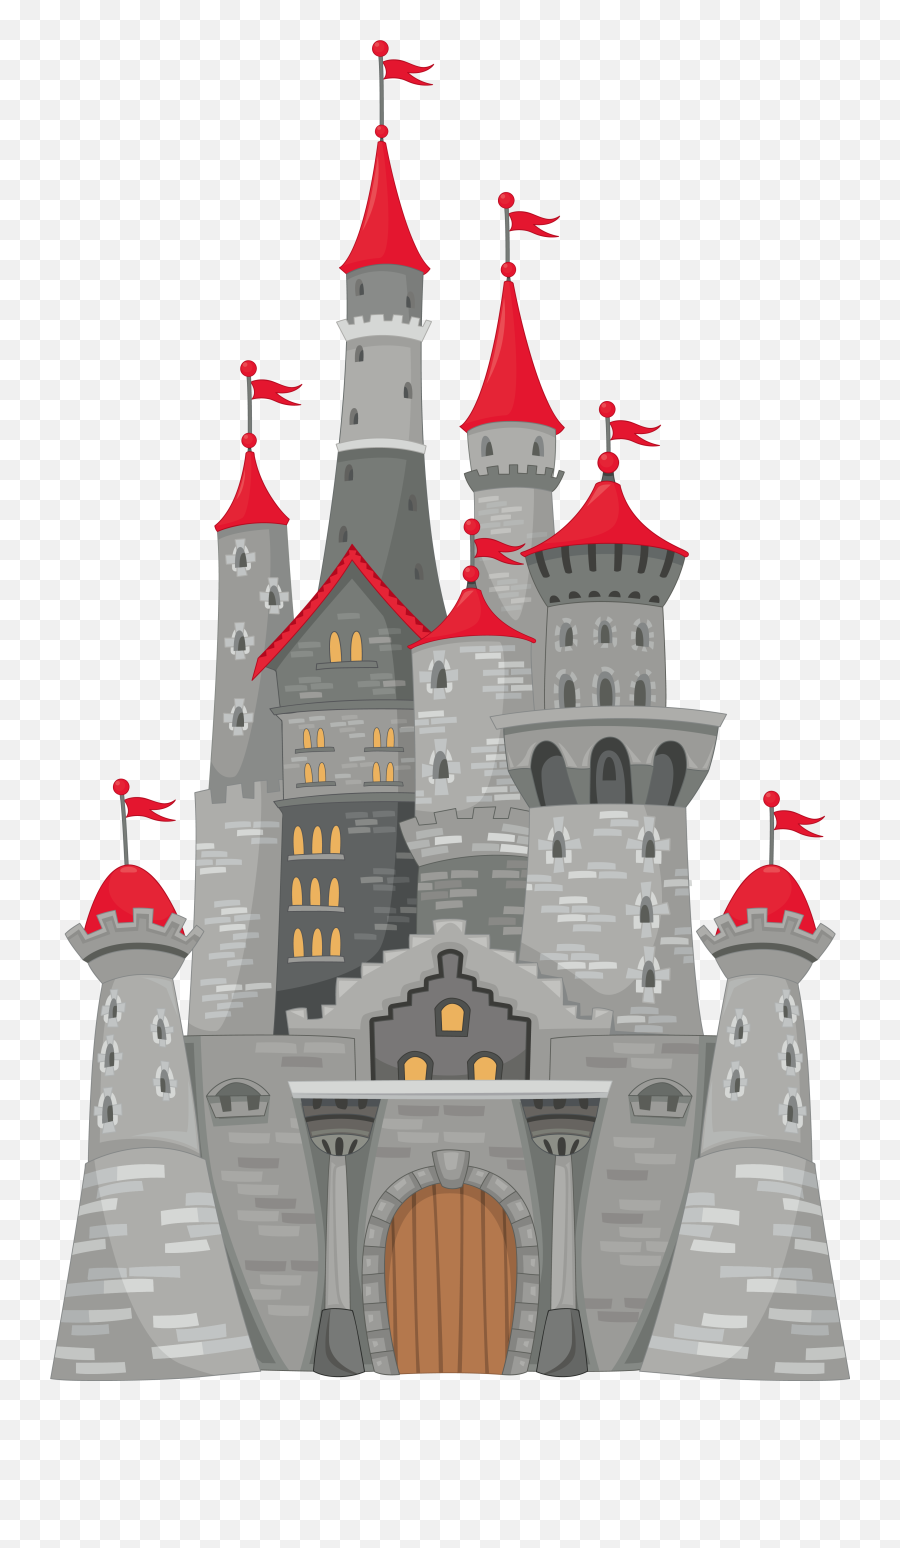 Queen Clipart Castle Queen Castle Transparent Free For - Medieval Castle Clipart Emoji,Castle Emoji